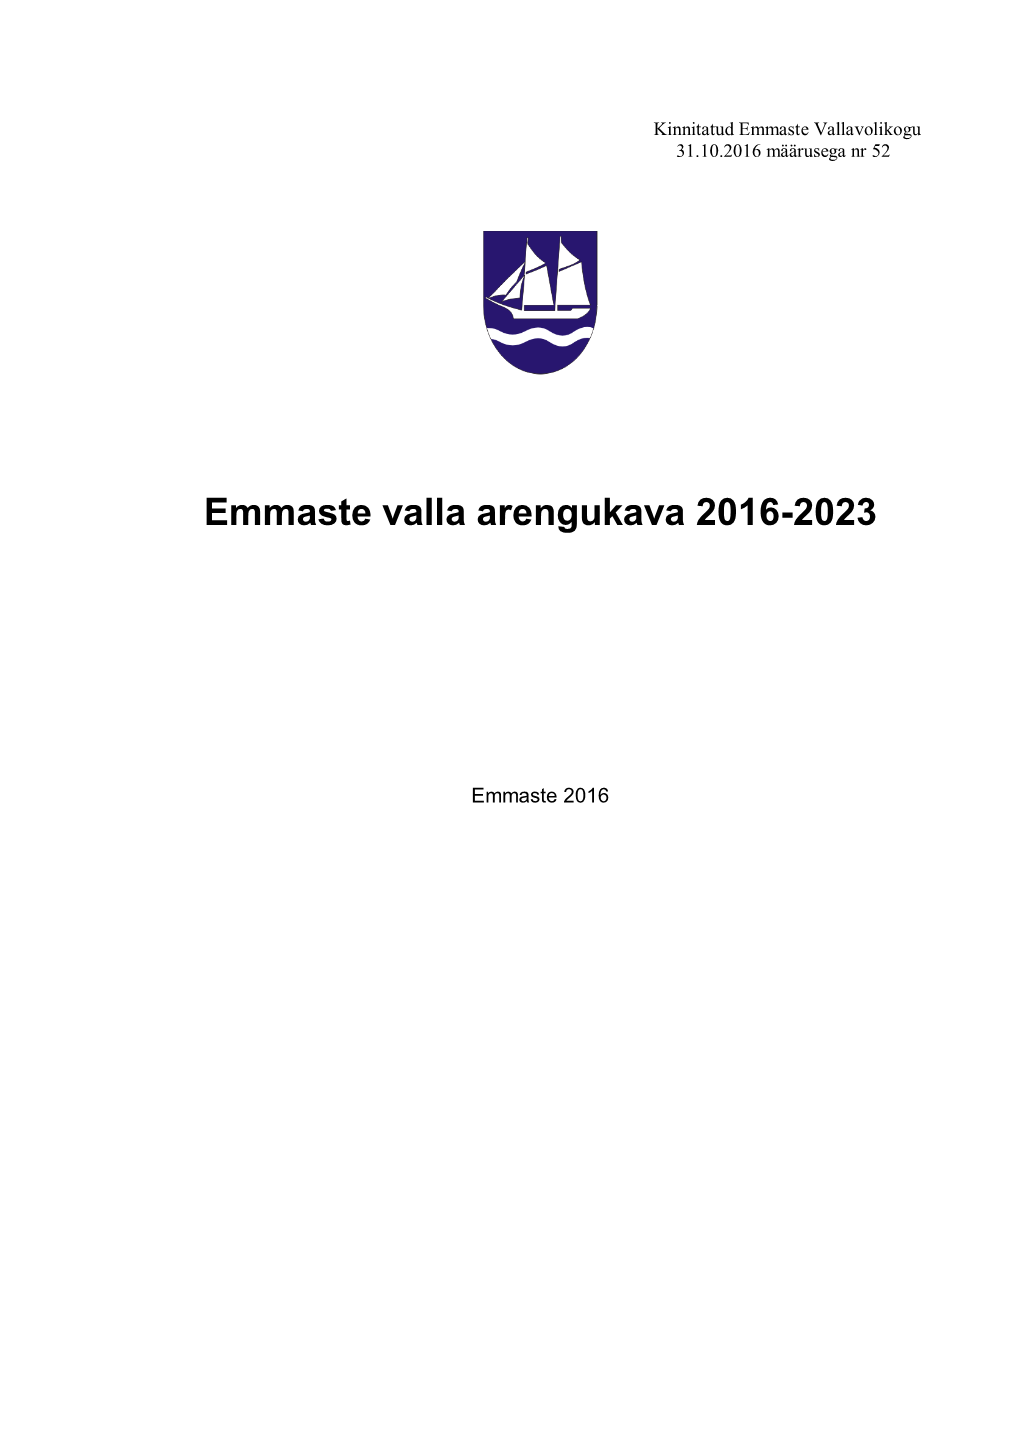 Emmaste Valla Arengukava 2016-2023